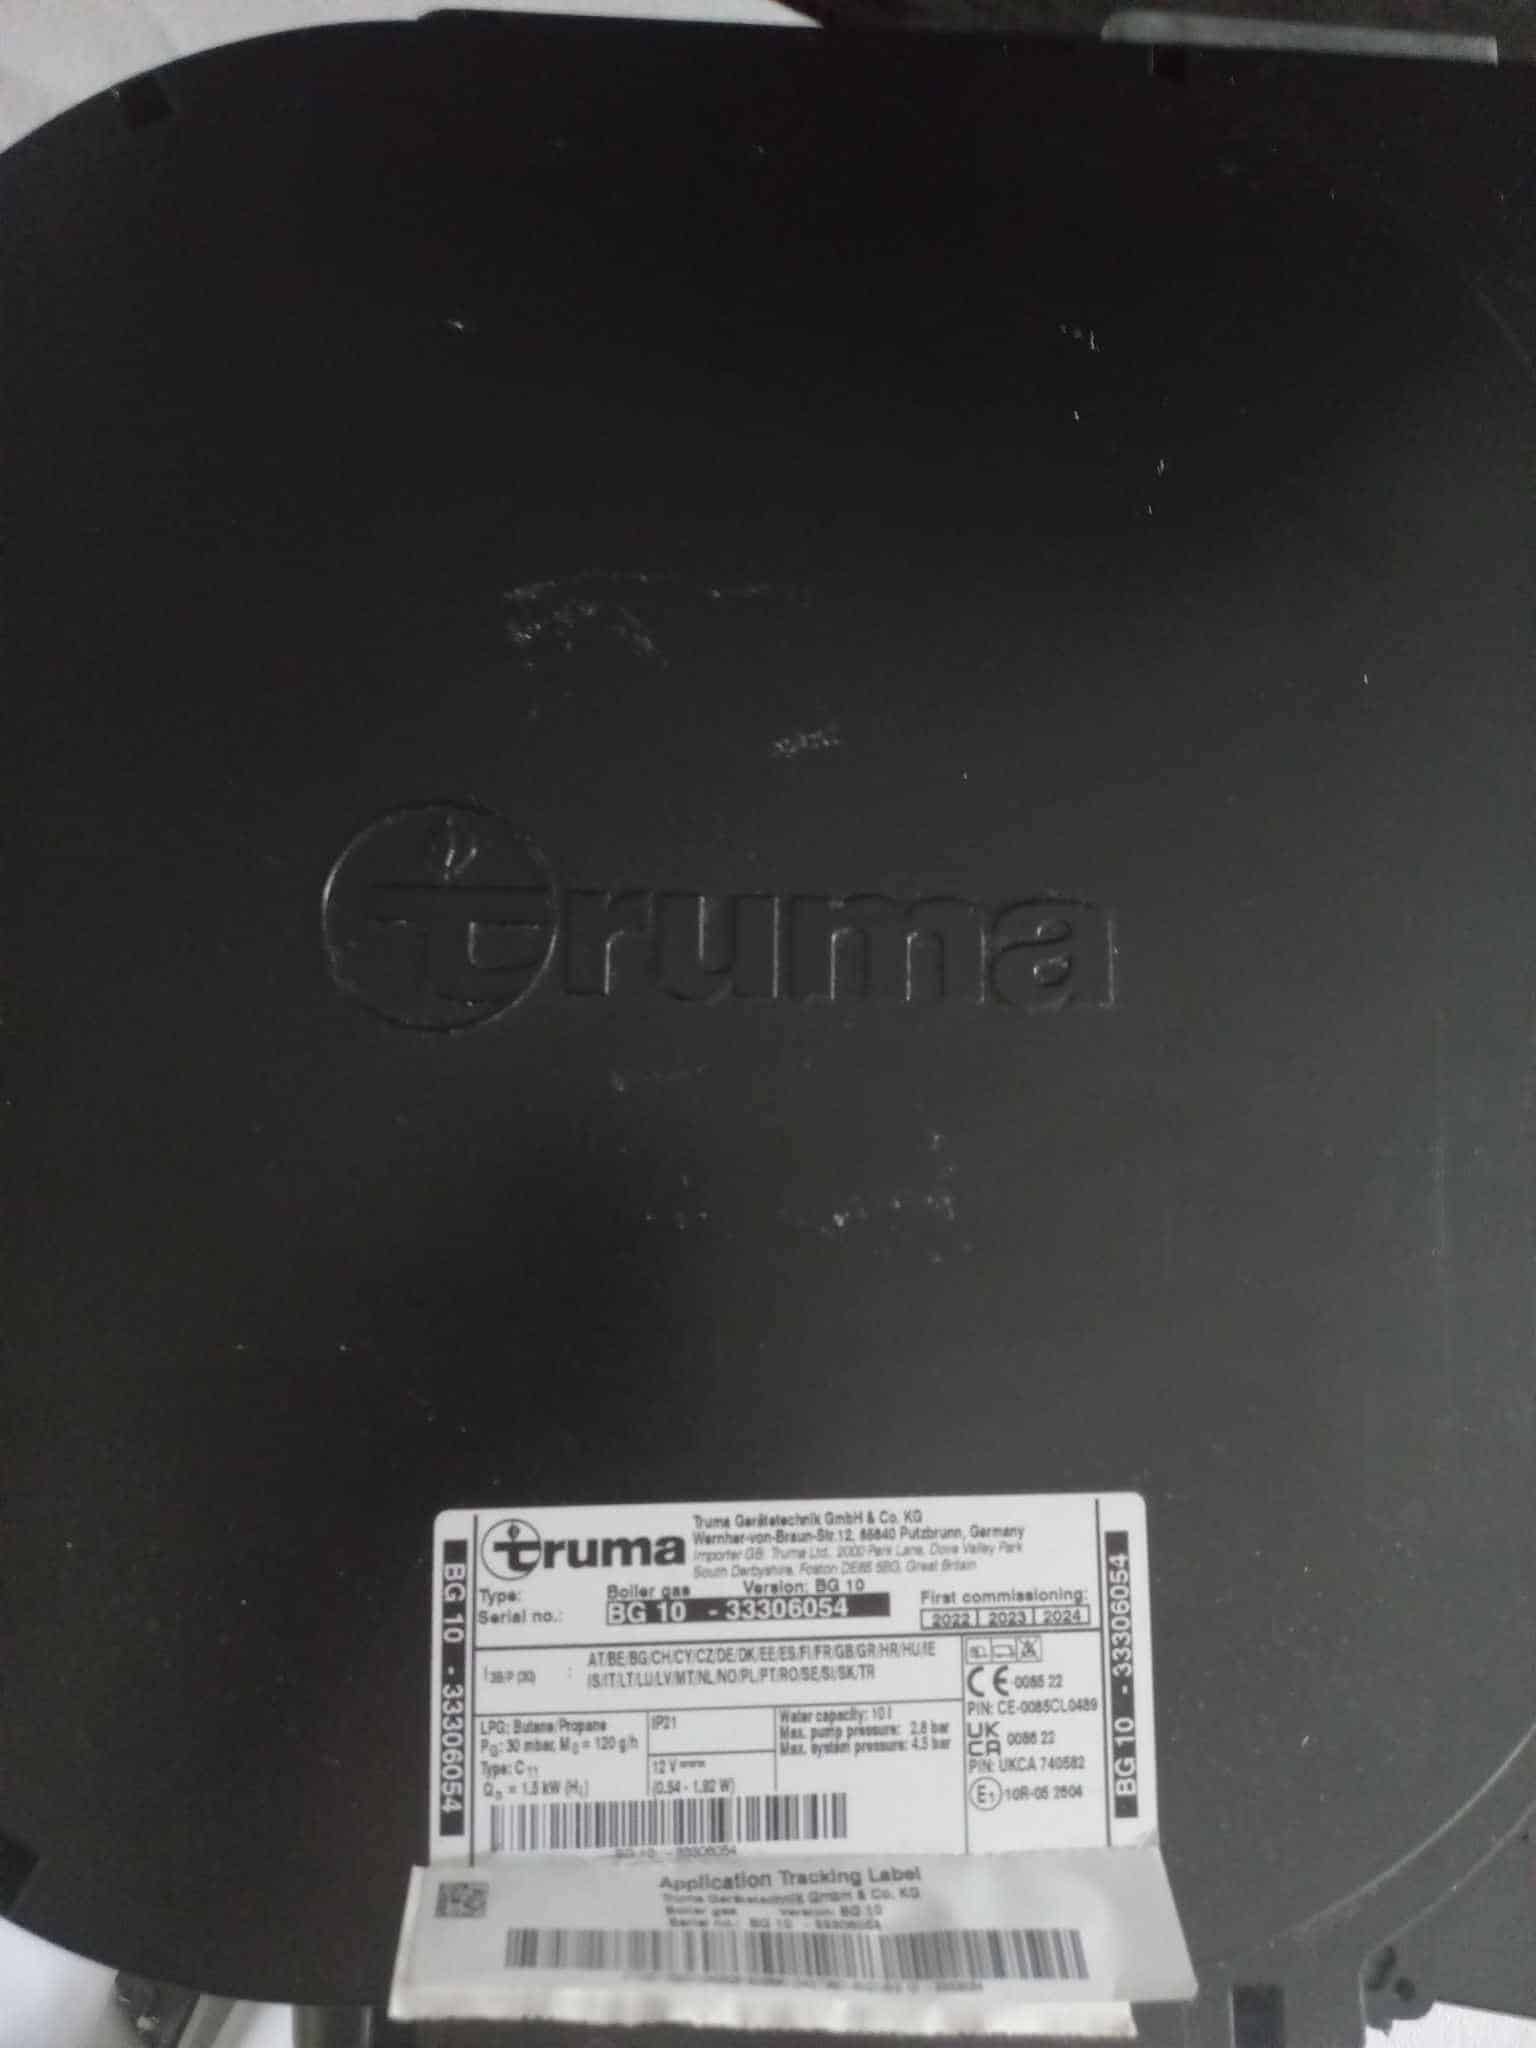 Étiquette produit sur chauffe-eau noir Truma.